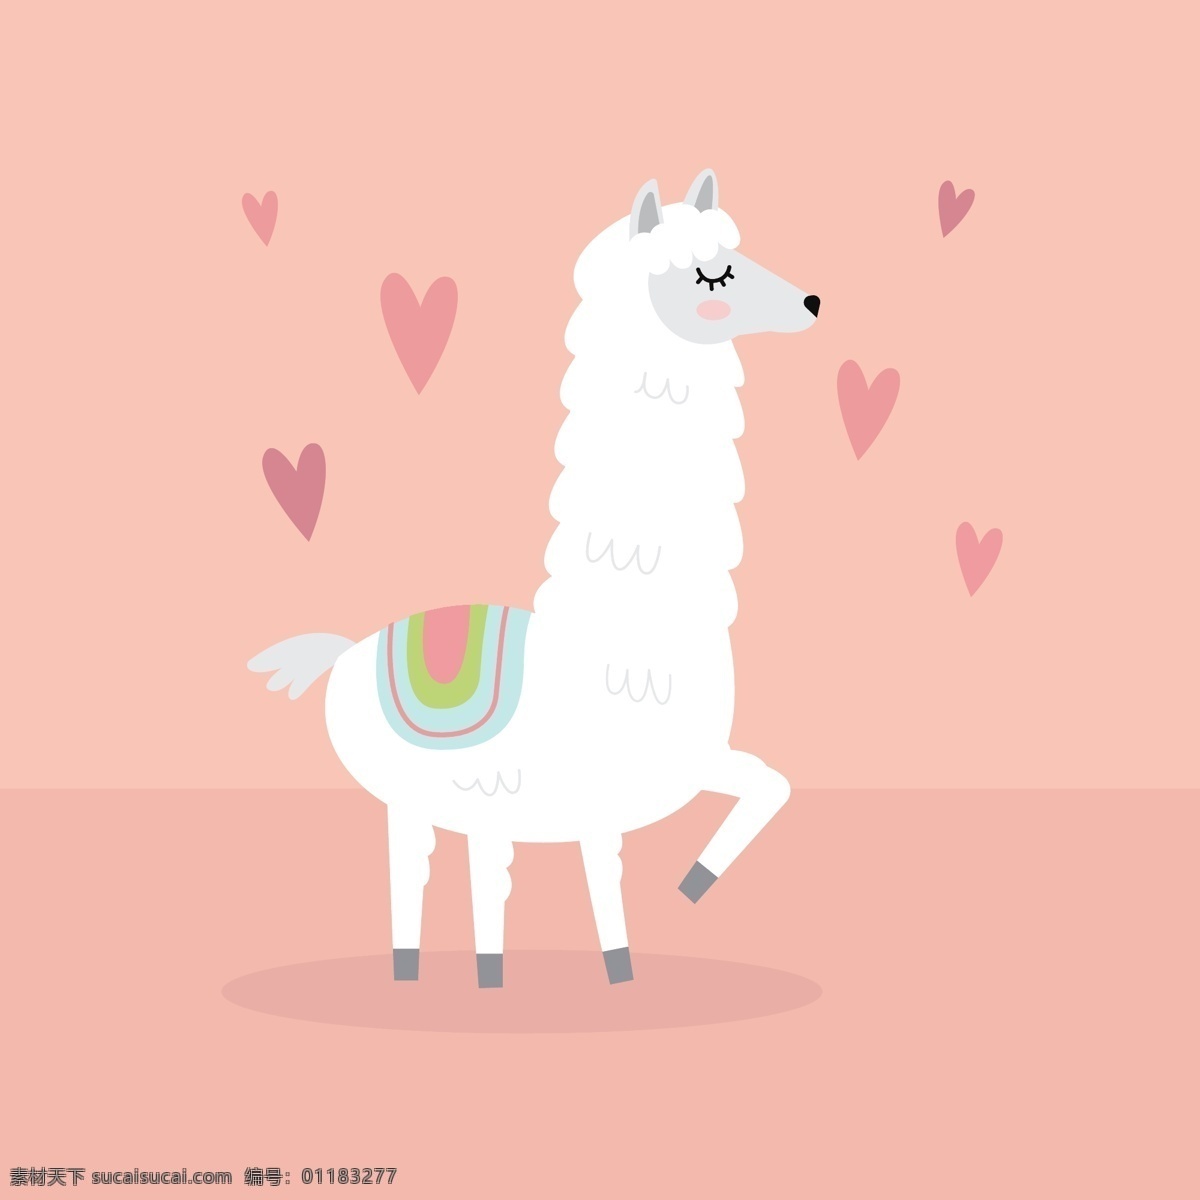 羊驼背景 背景 动物 可爱 微笑 快乐 滑稽 可爱的背景 爱背景 可爱的动物 美丽 骆驼 羊驼 底纹边框 背景底纹